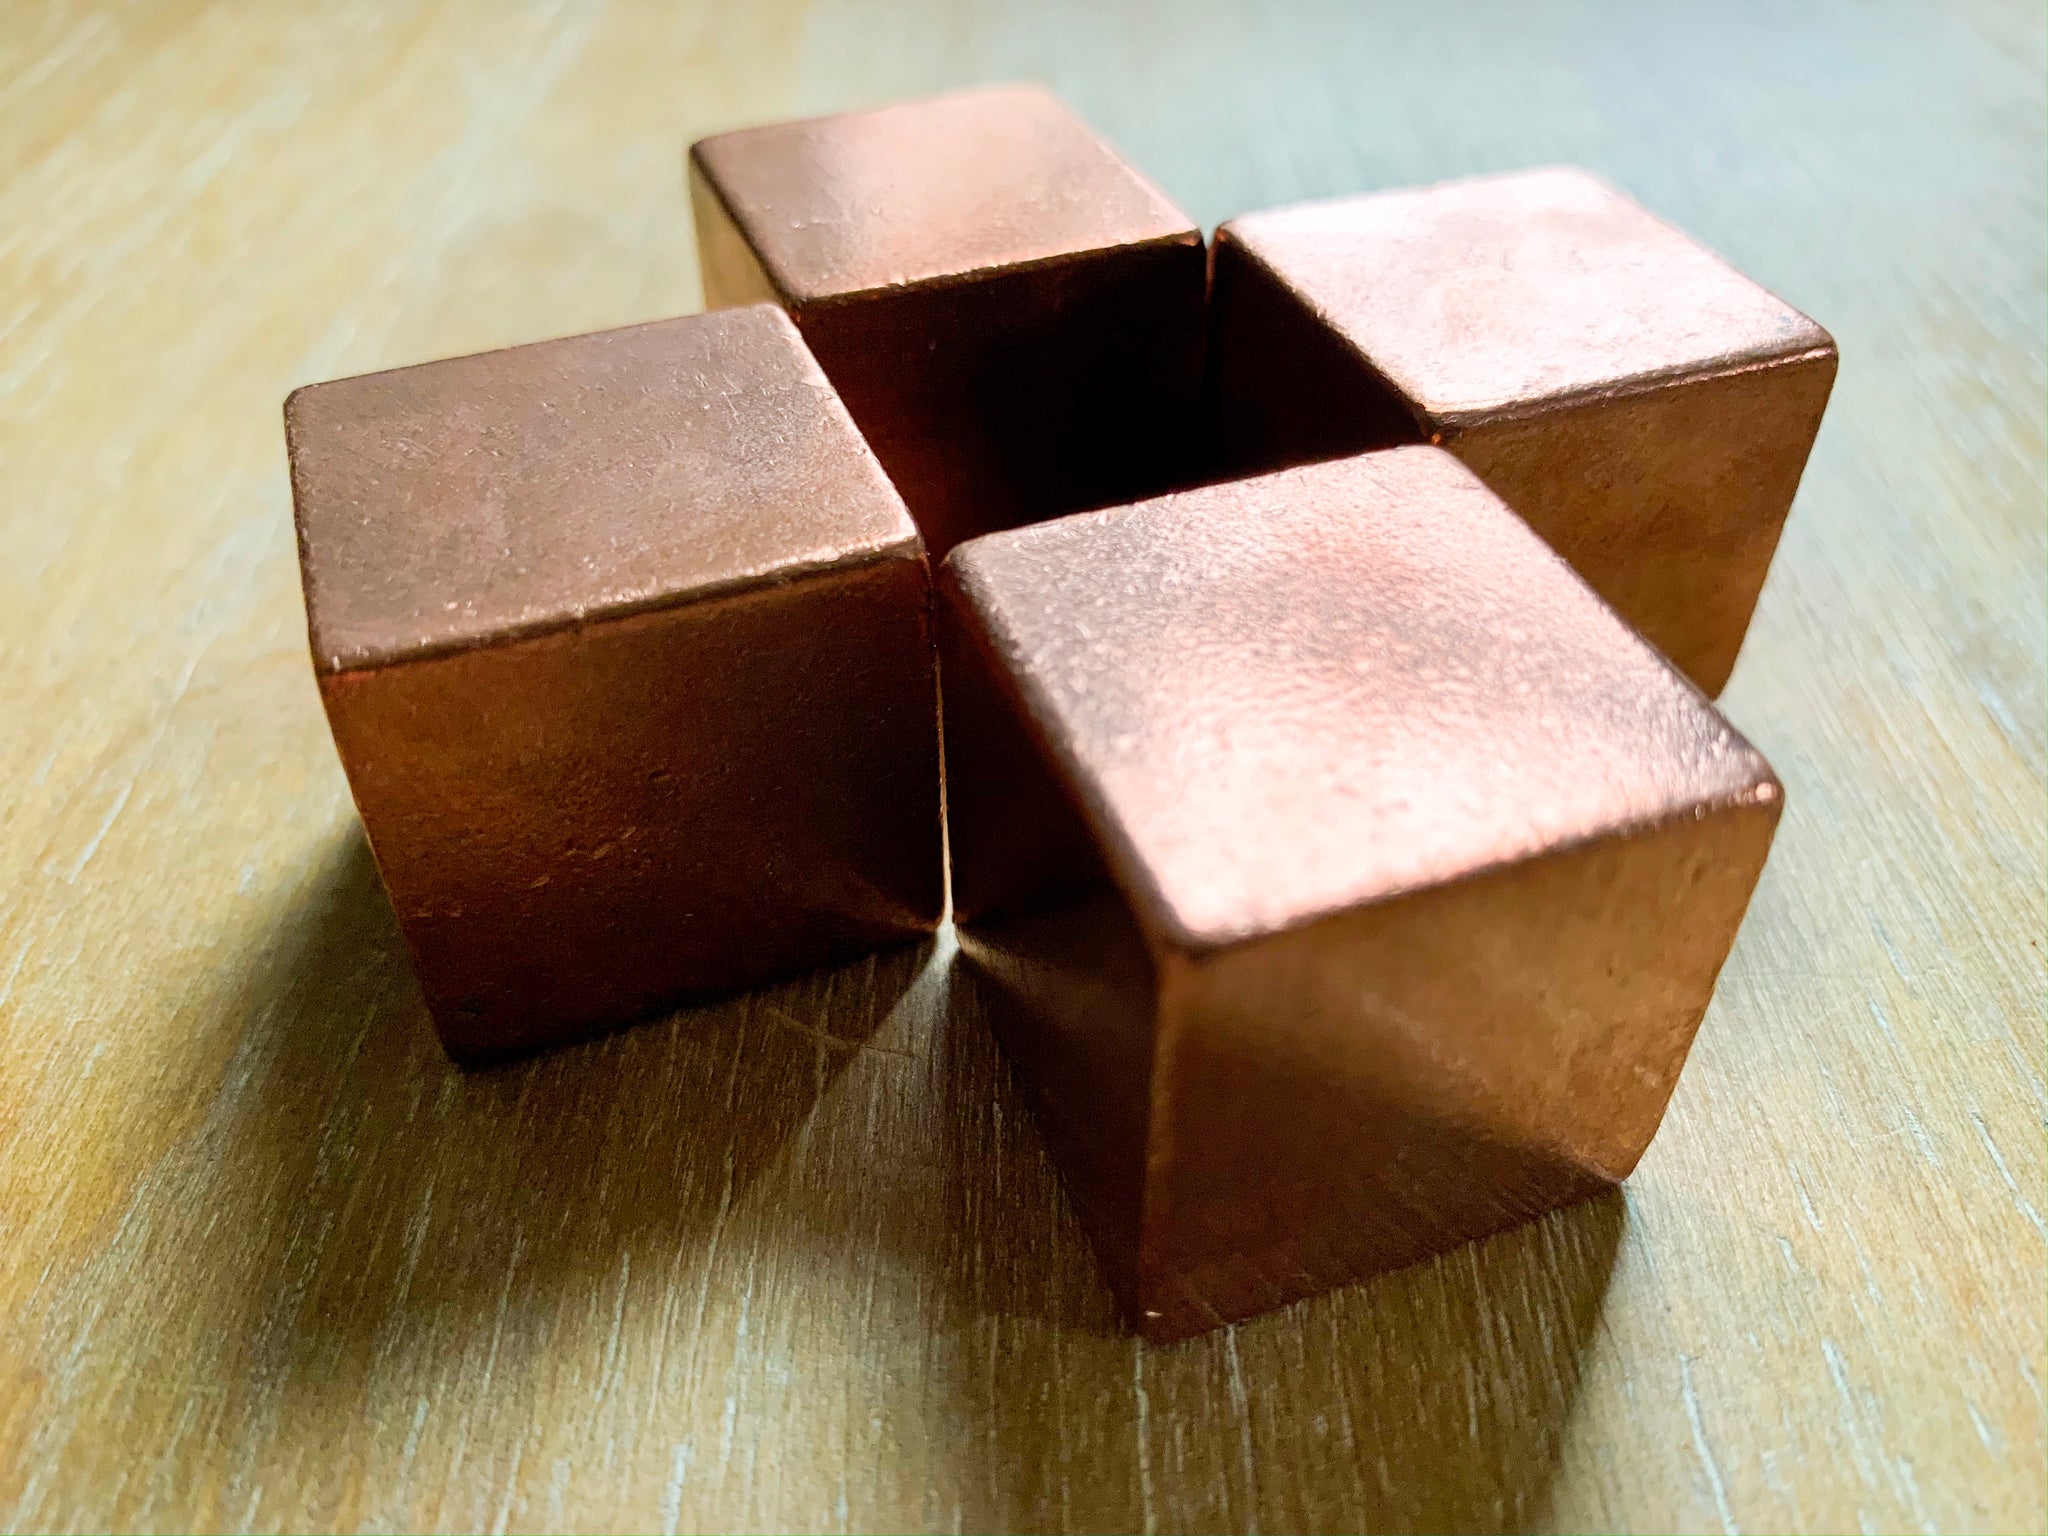 crackzinn coppercube